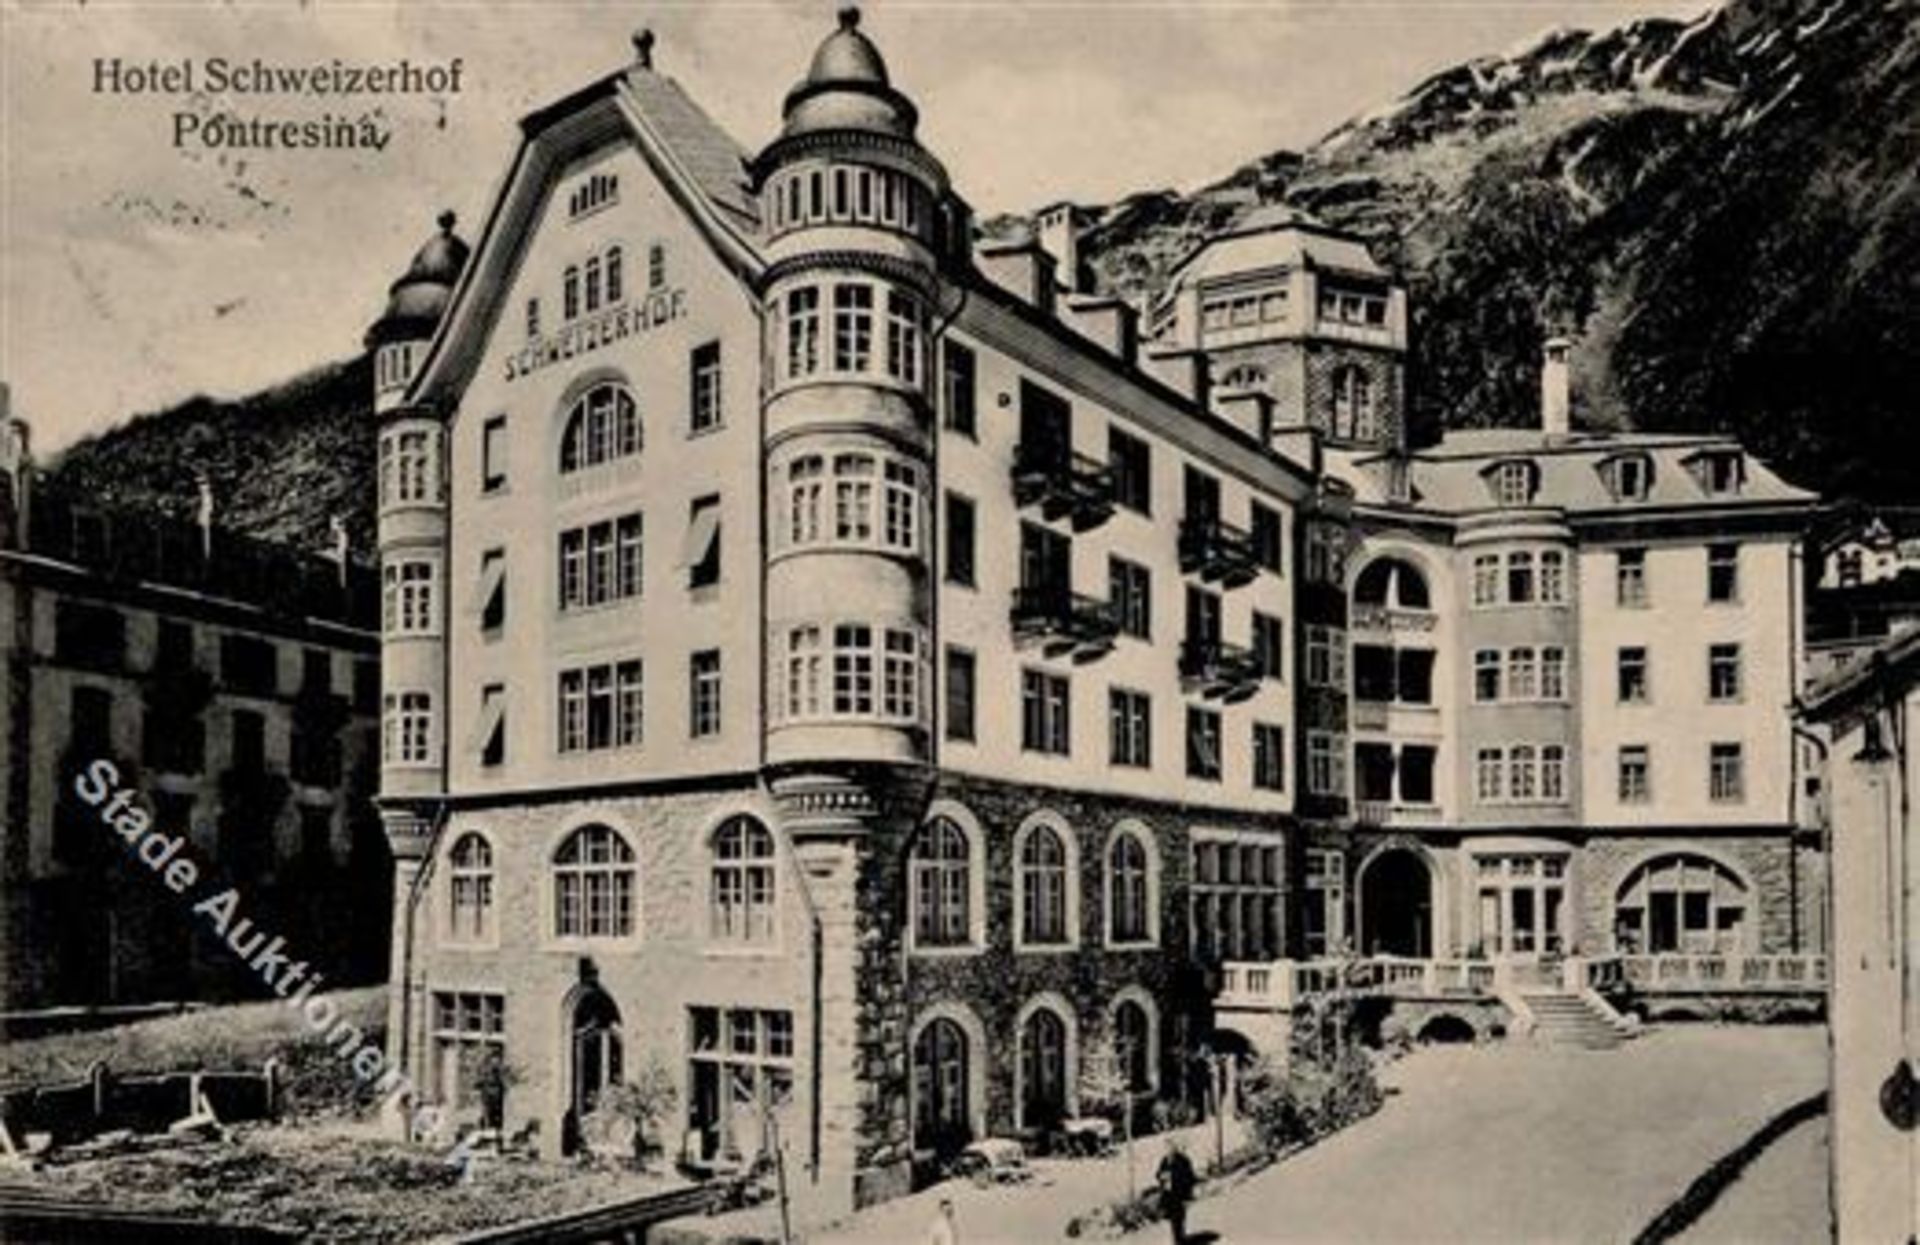 Pontresina (7504) Schweiz Hotel Schweizer Hof 1916 I-IIDieses Los wird in einer online-Auktion